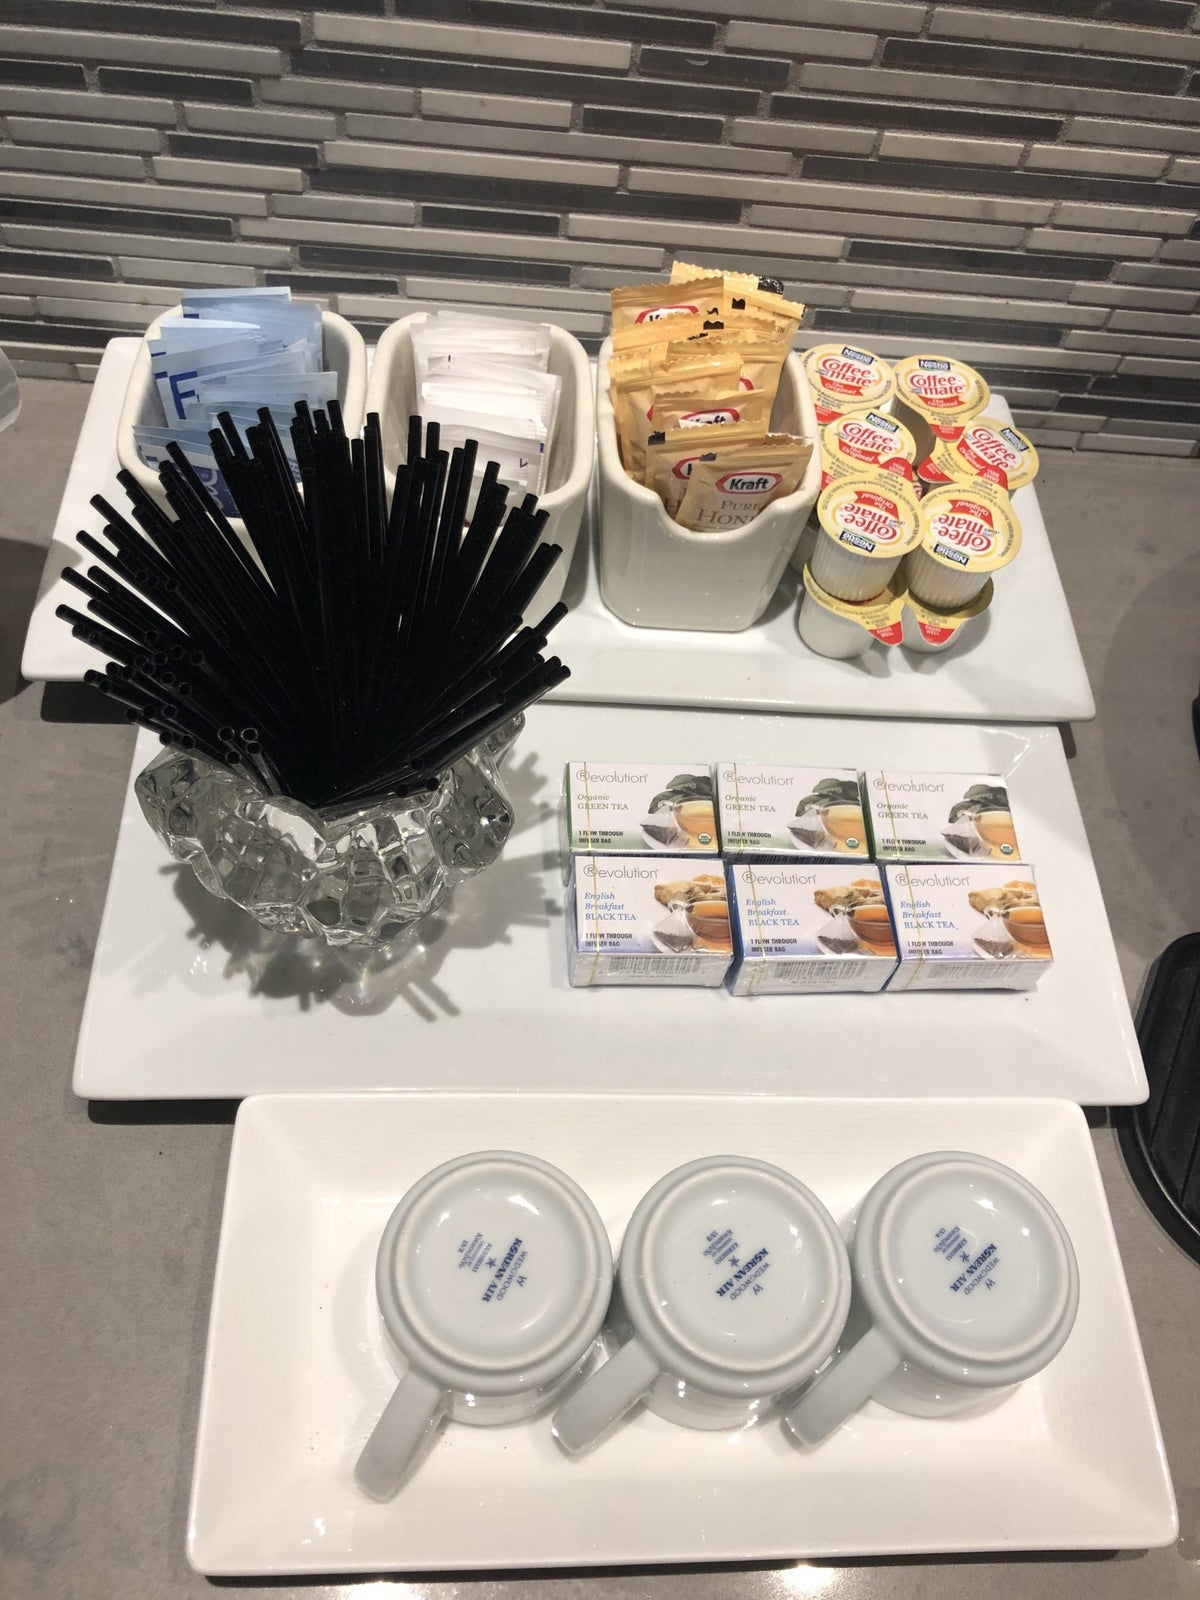 Korean Air lounge tea offerings